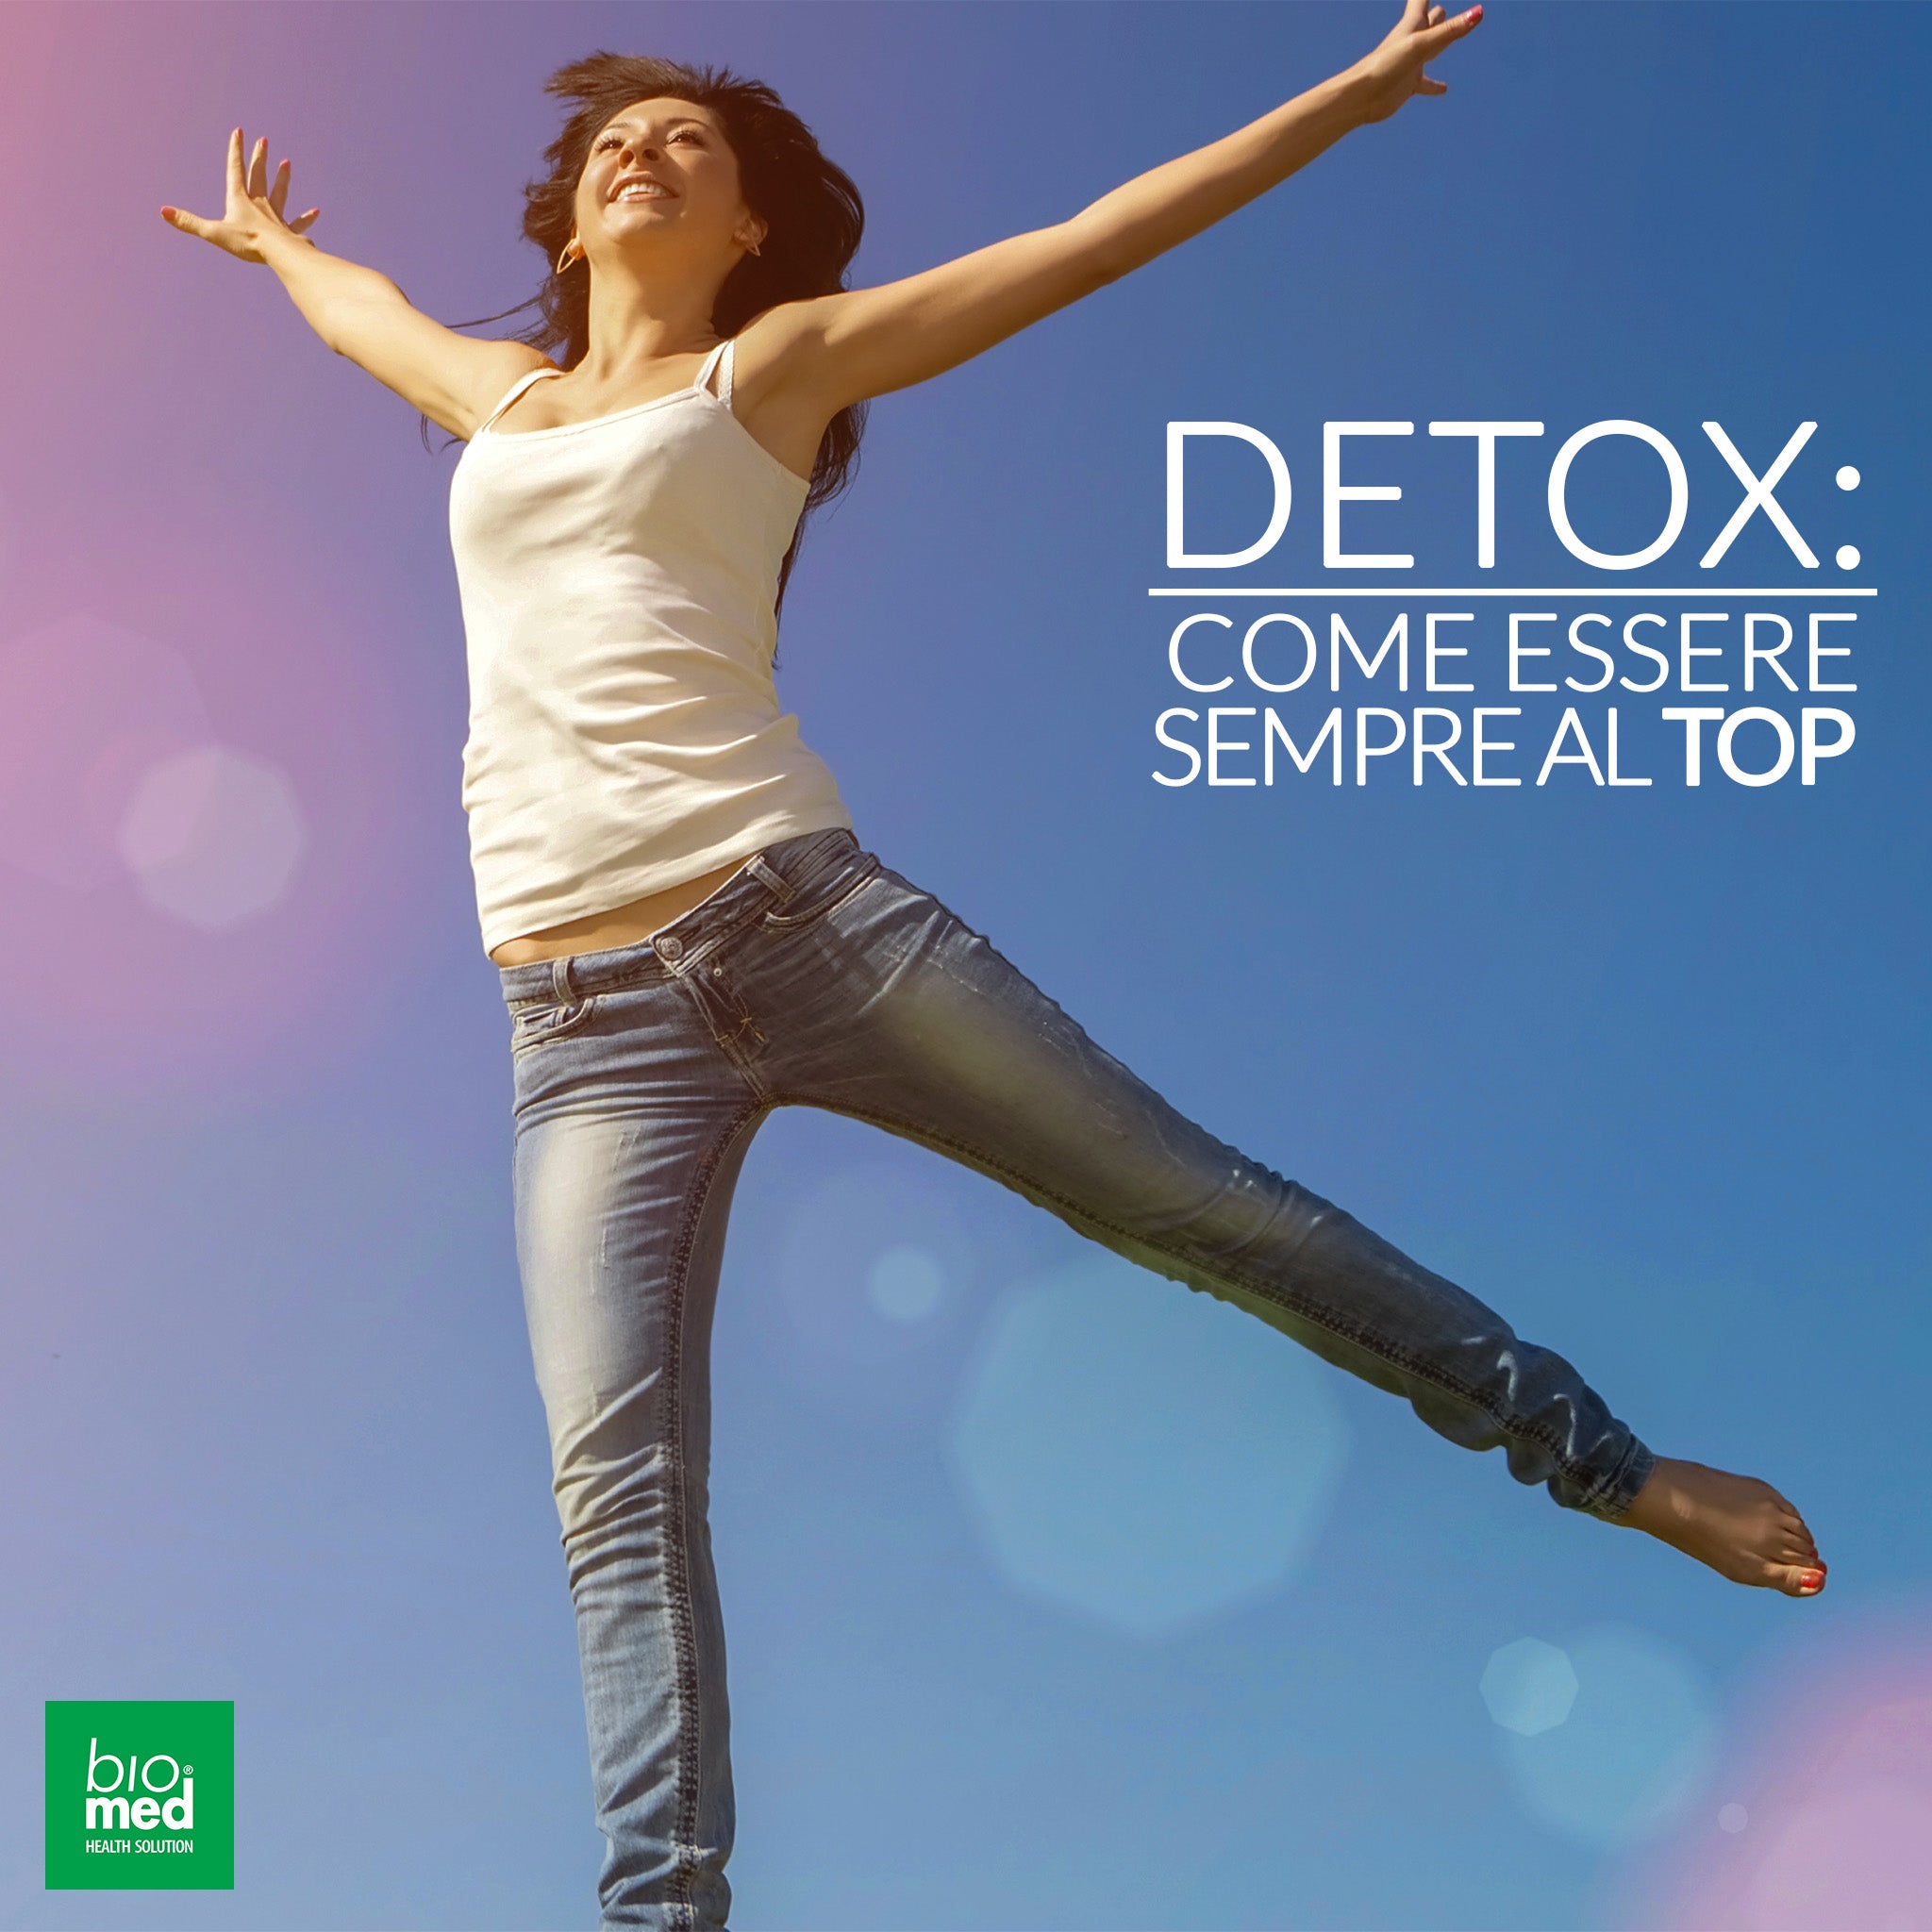 Biomed Detox prenditi cura del tuo fegato per affrontare la primavera con energia!